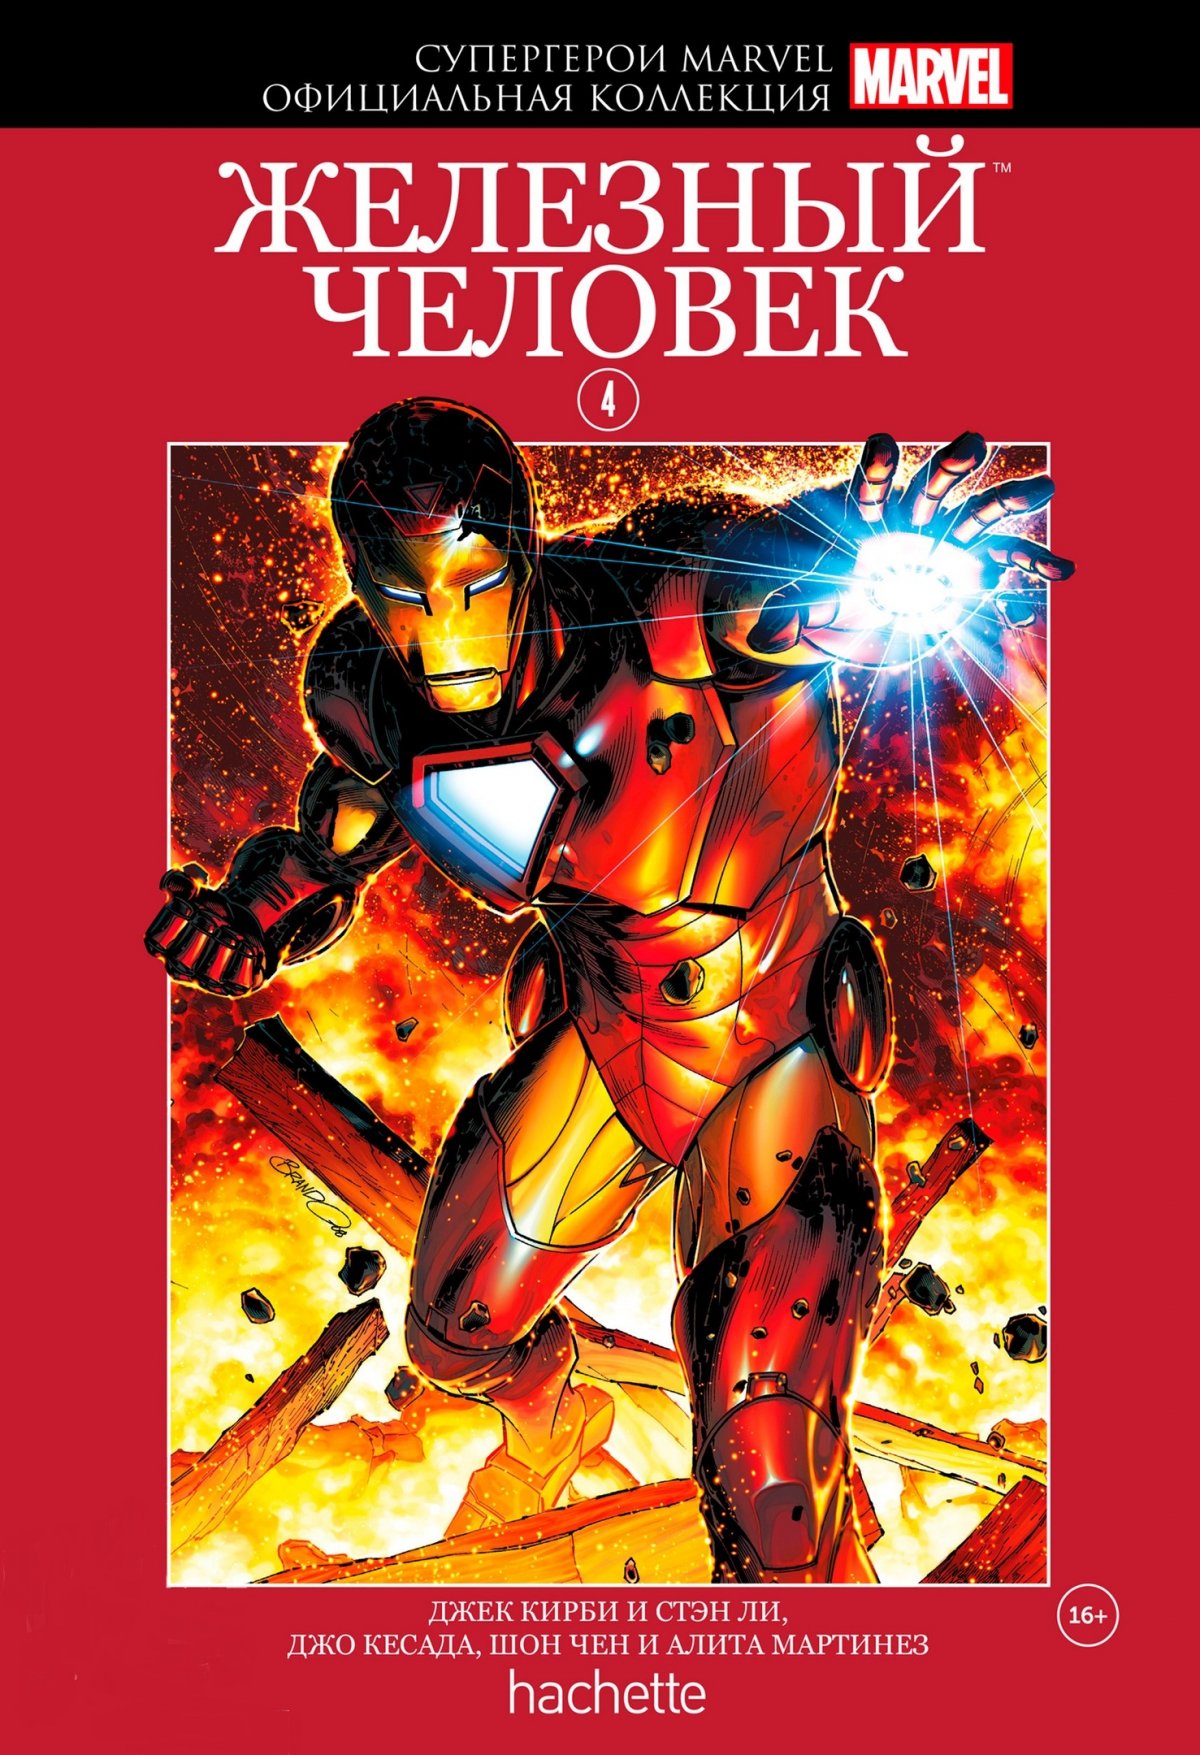 Hachette Официальная коллекция комиксов Супергерои Marvel: Железный человек. Том 4